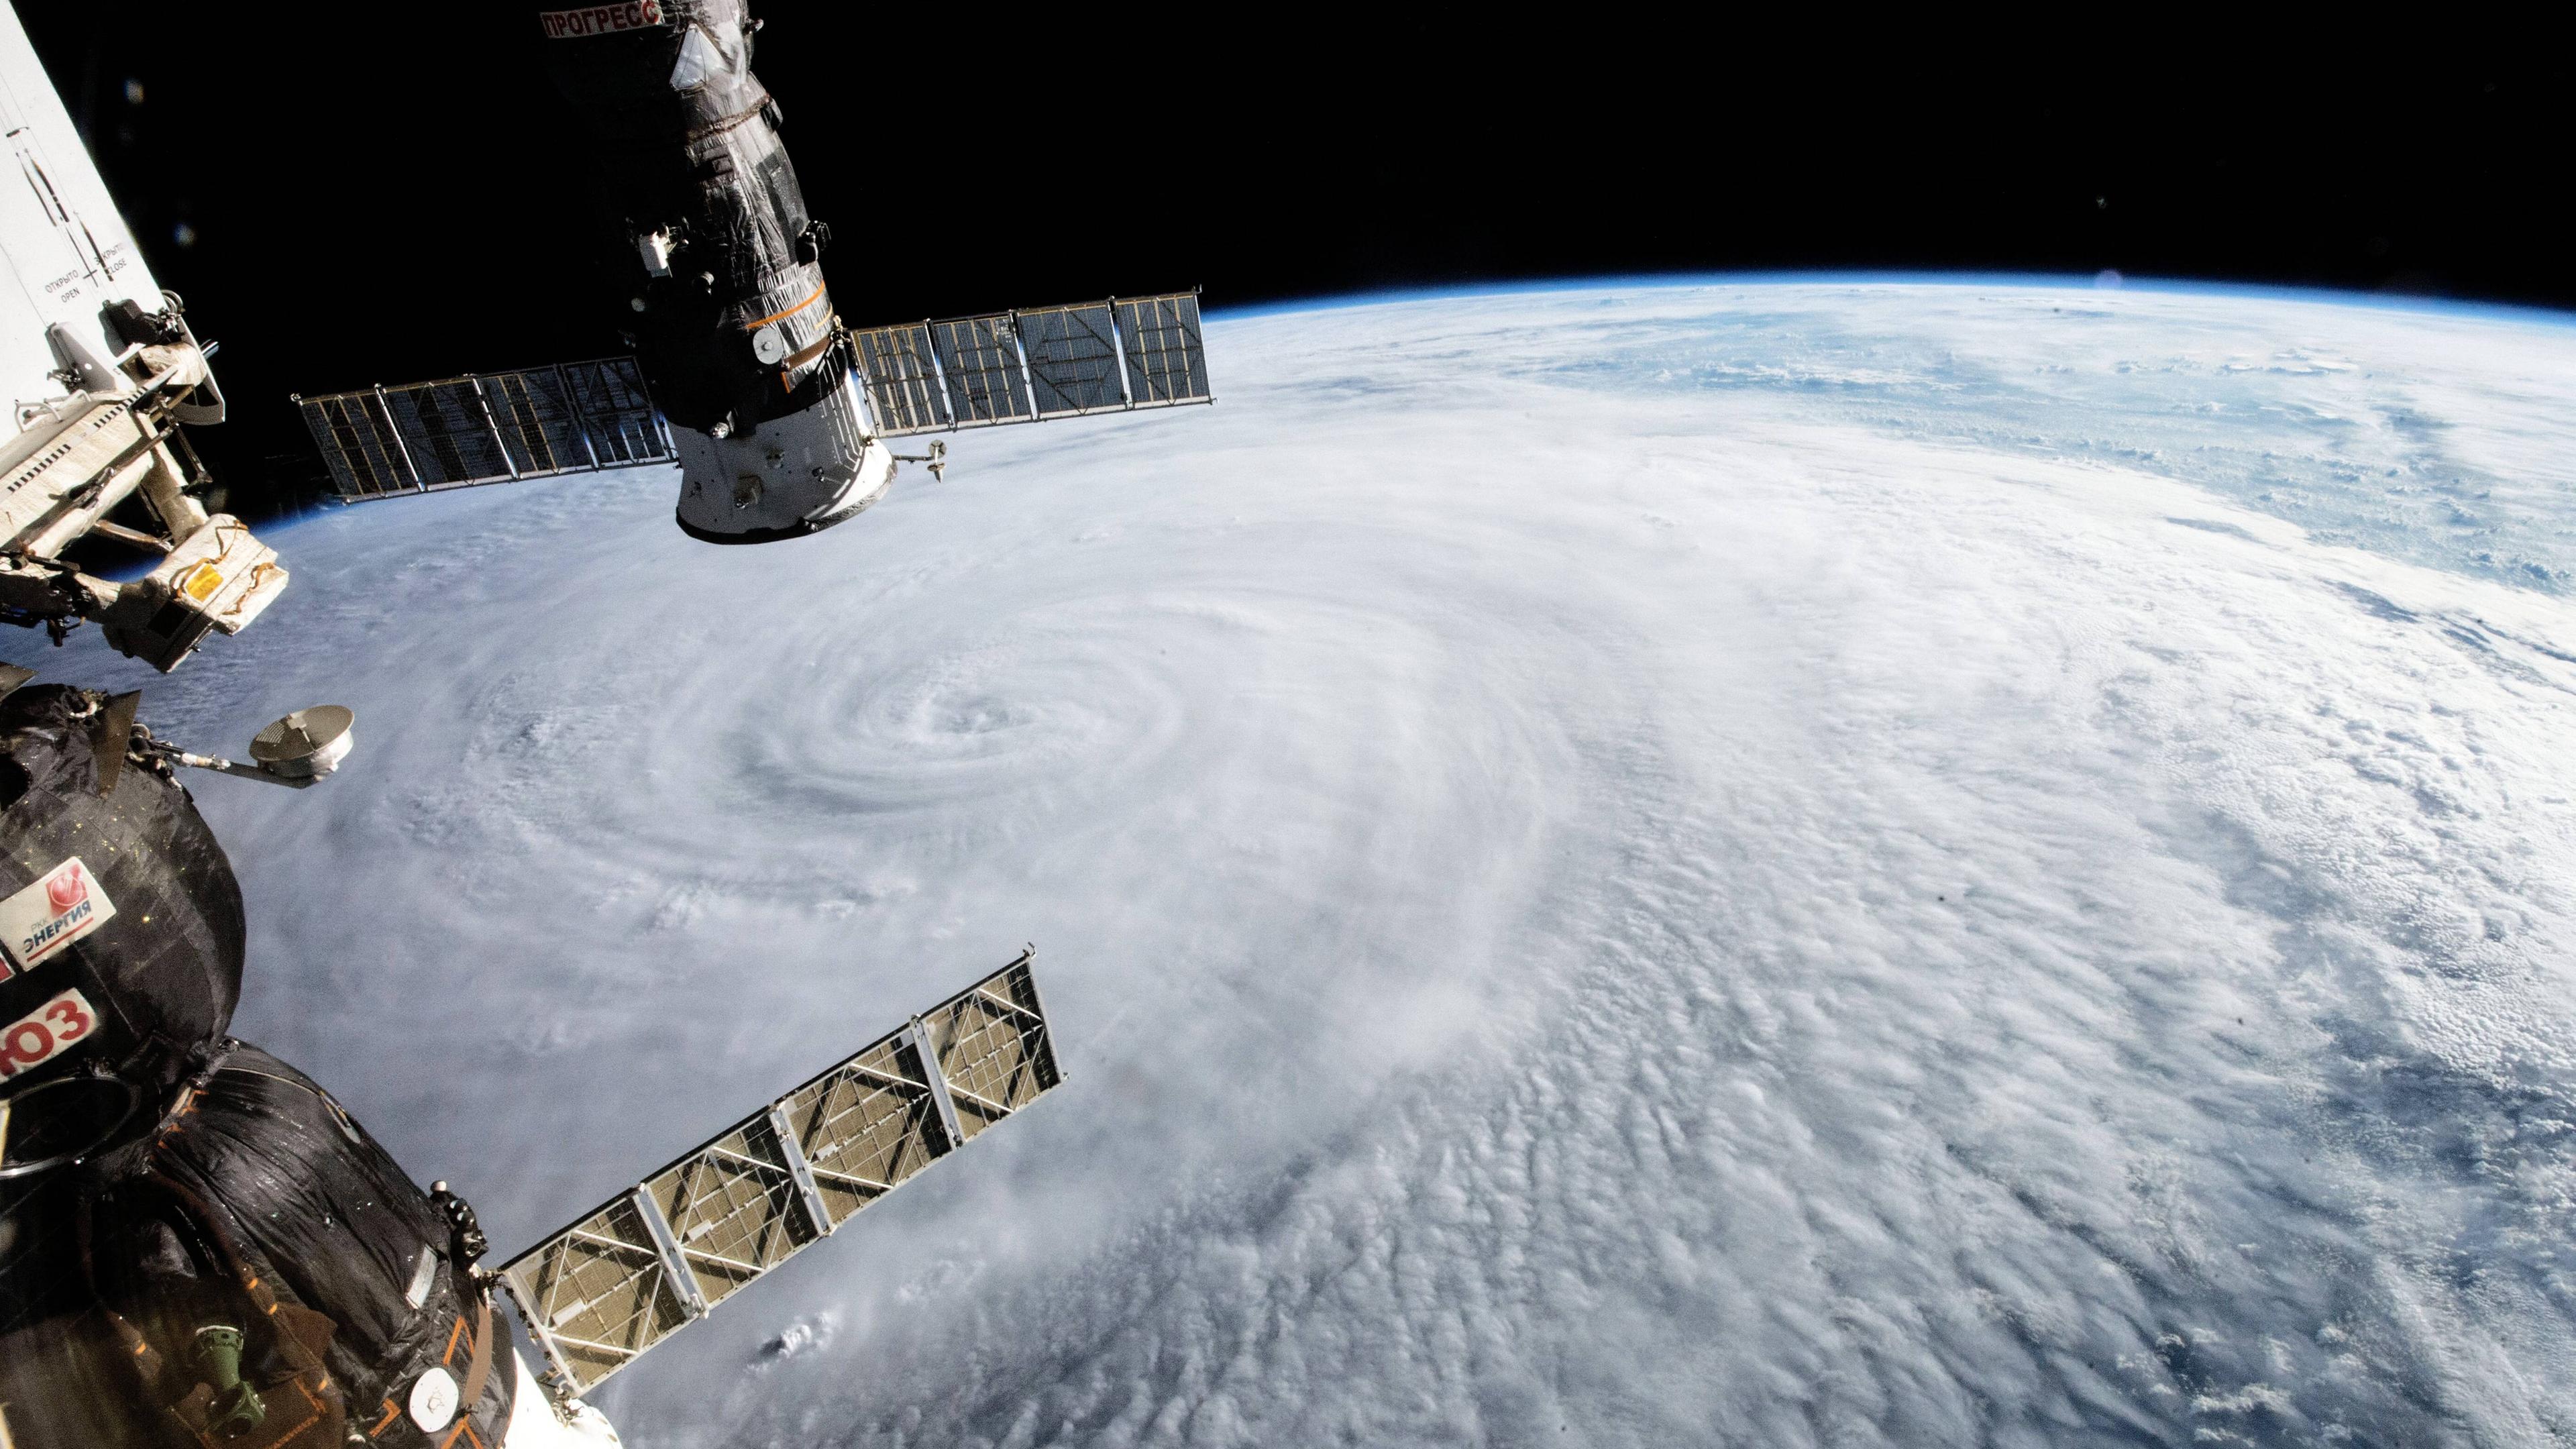 Taifun aus dem Weltall fotografiert